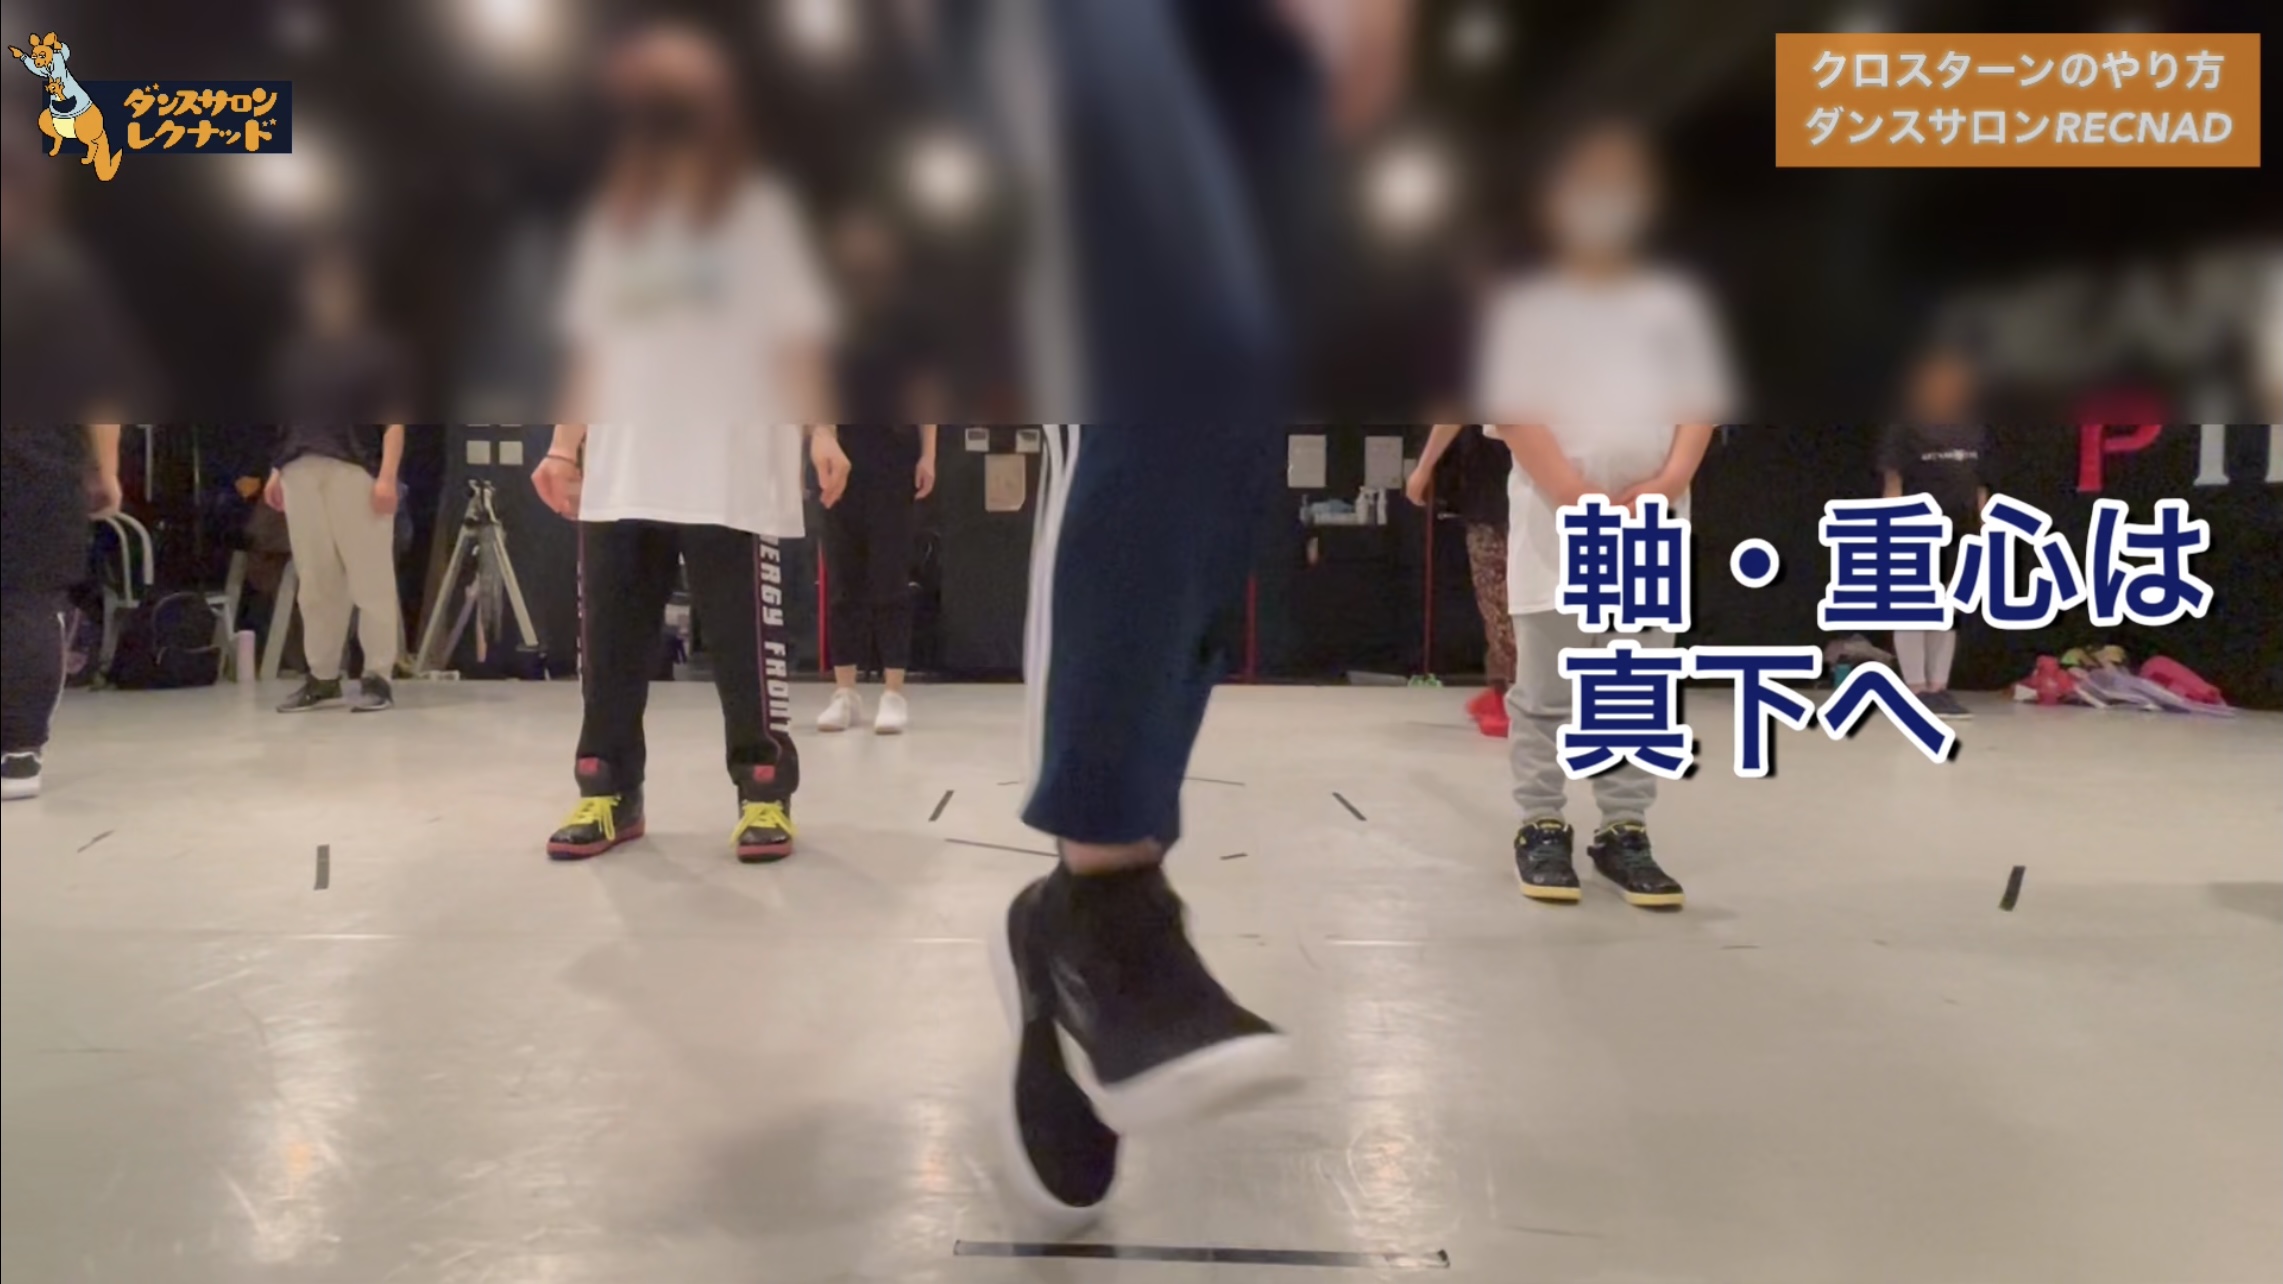 ターン 【ダンス動画】プロダンサーが教えるダンスのターンのやり方